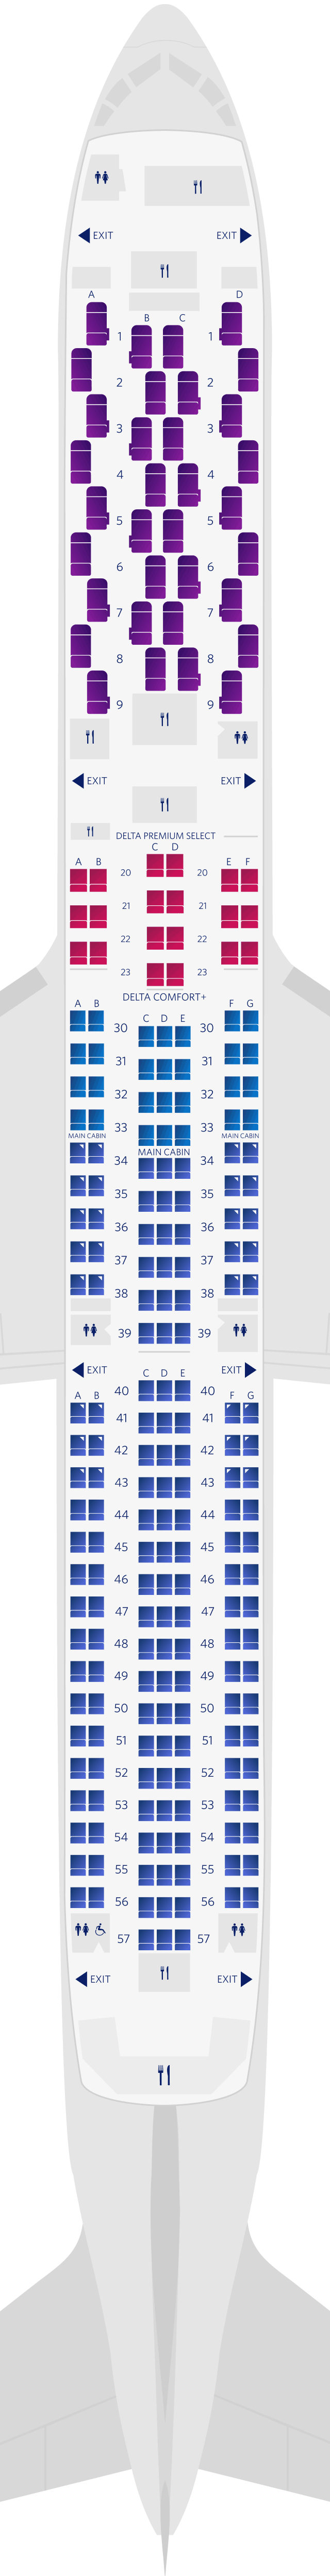 Boeing 767-400ER (764) Seat Map